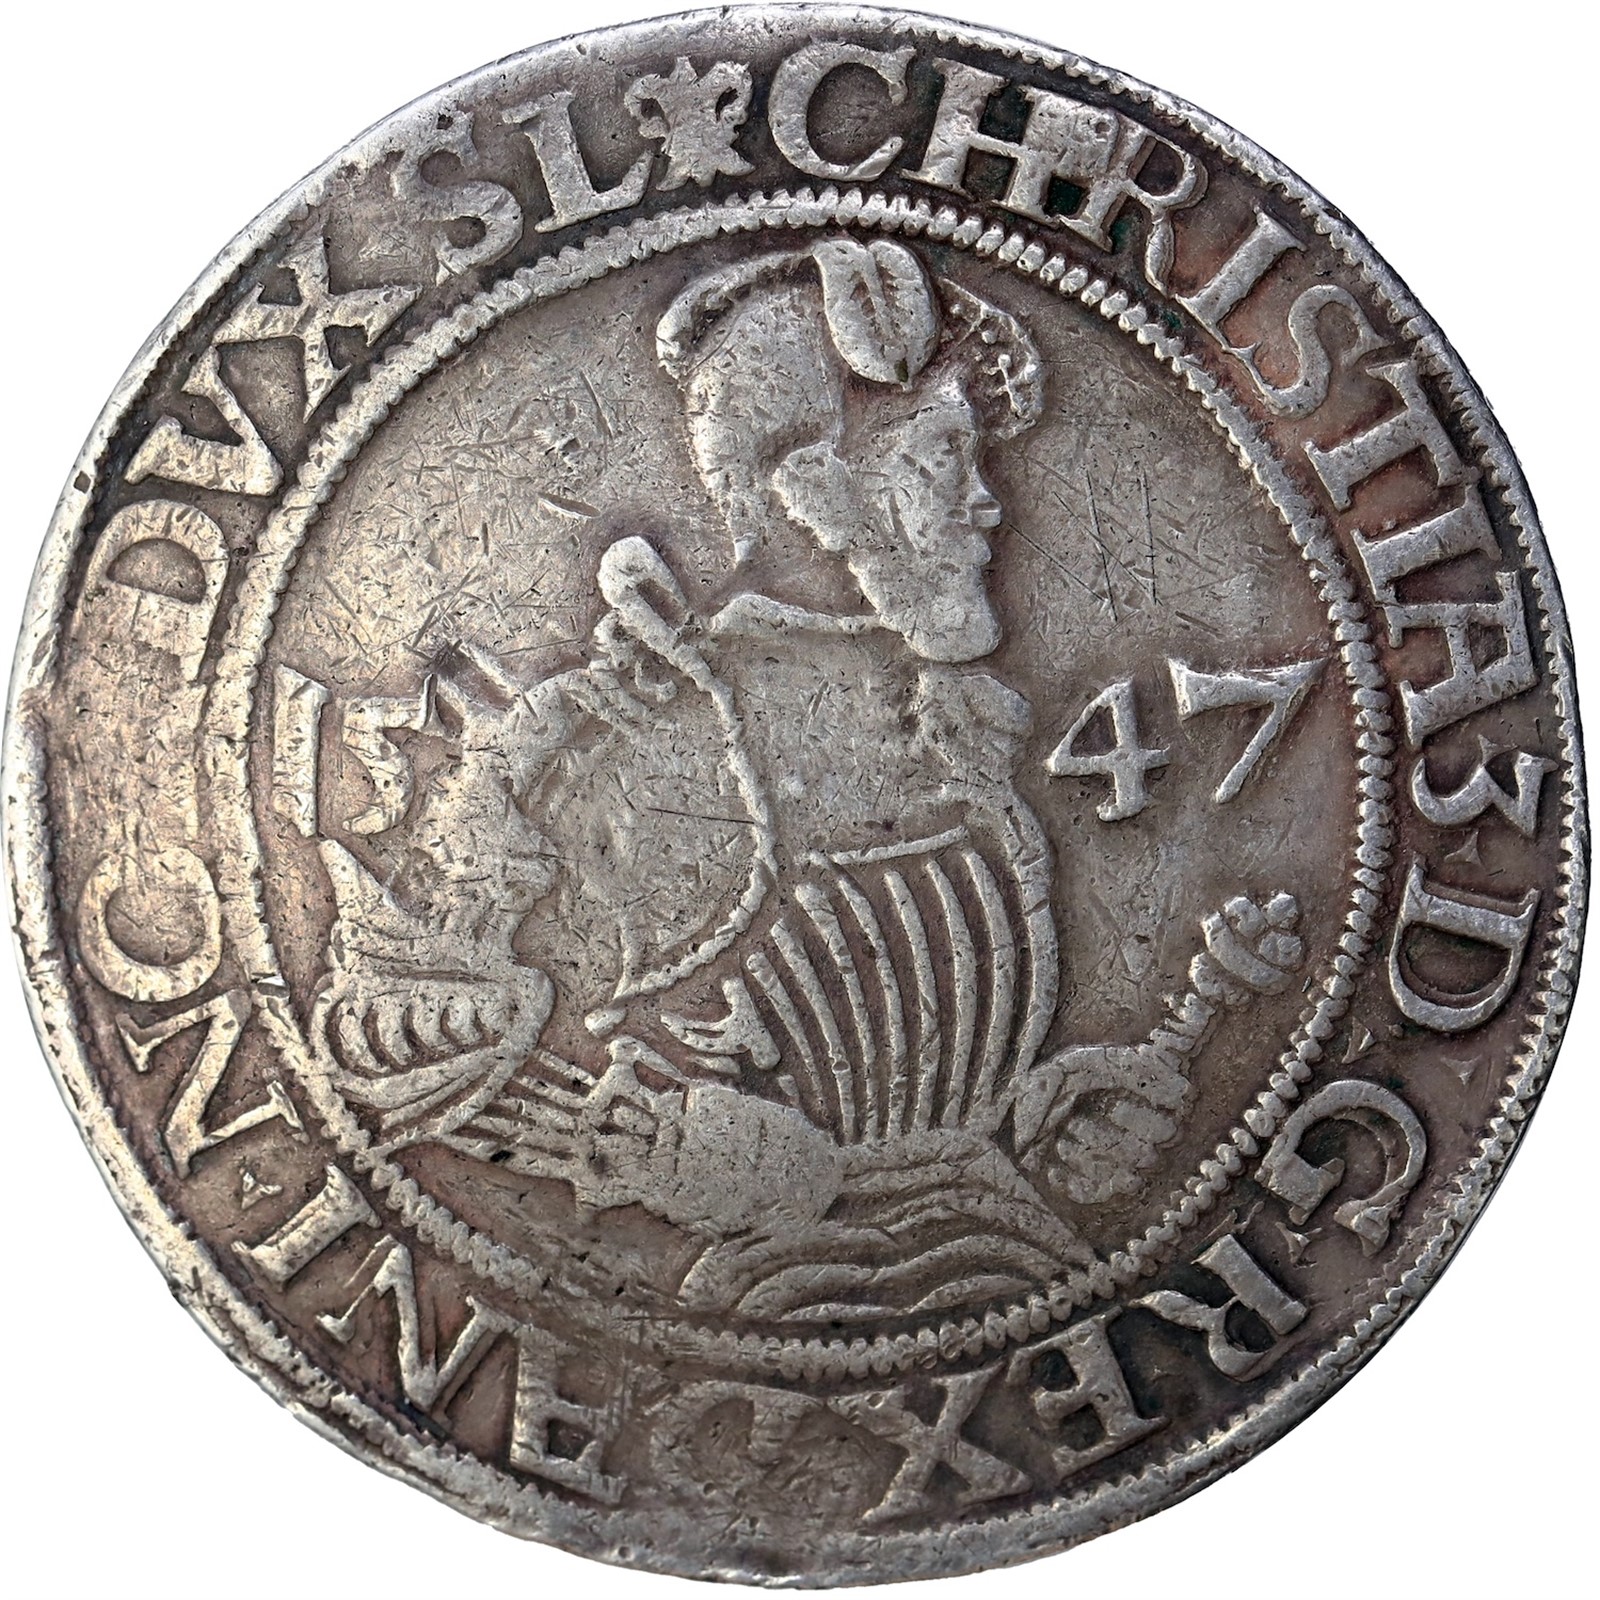 DENMARK, FLENSBURG. Christian III. Sølvgylden 1547 Kv 1 (F/VF).